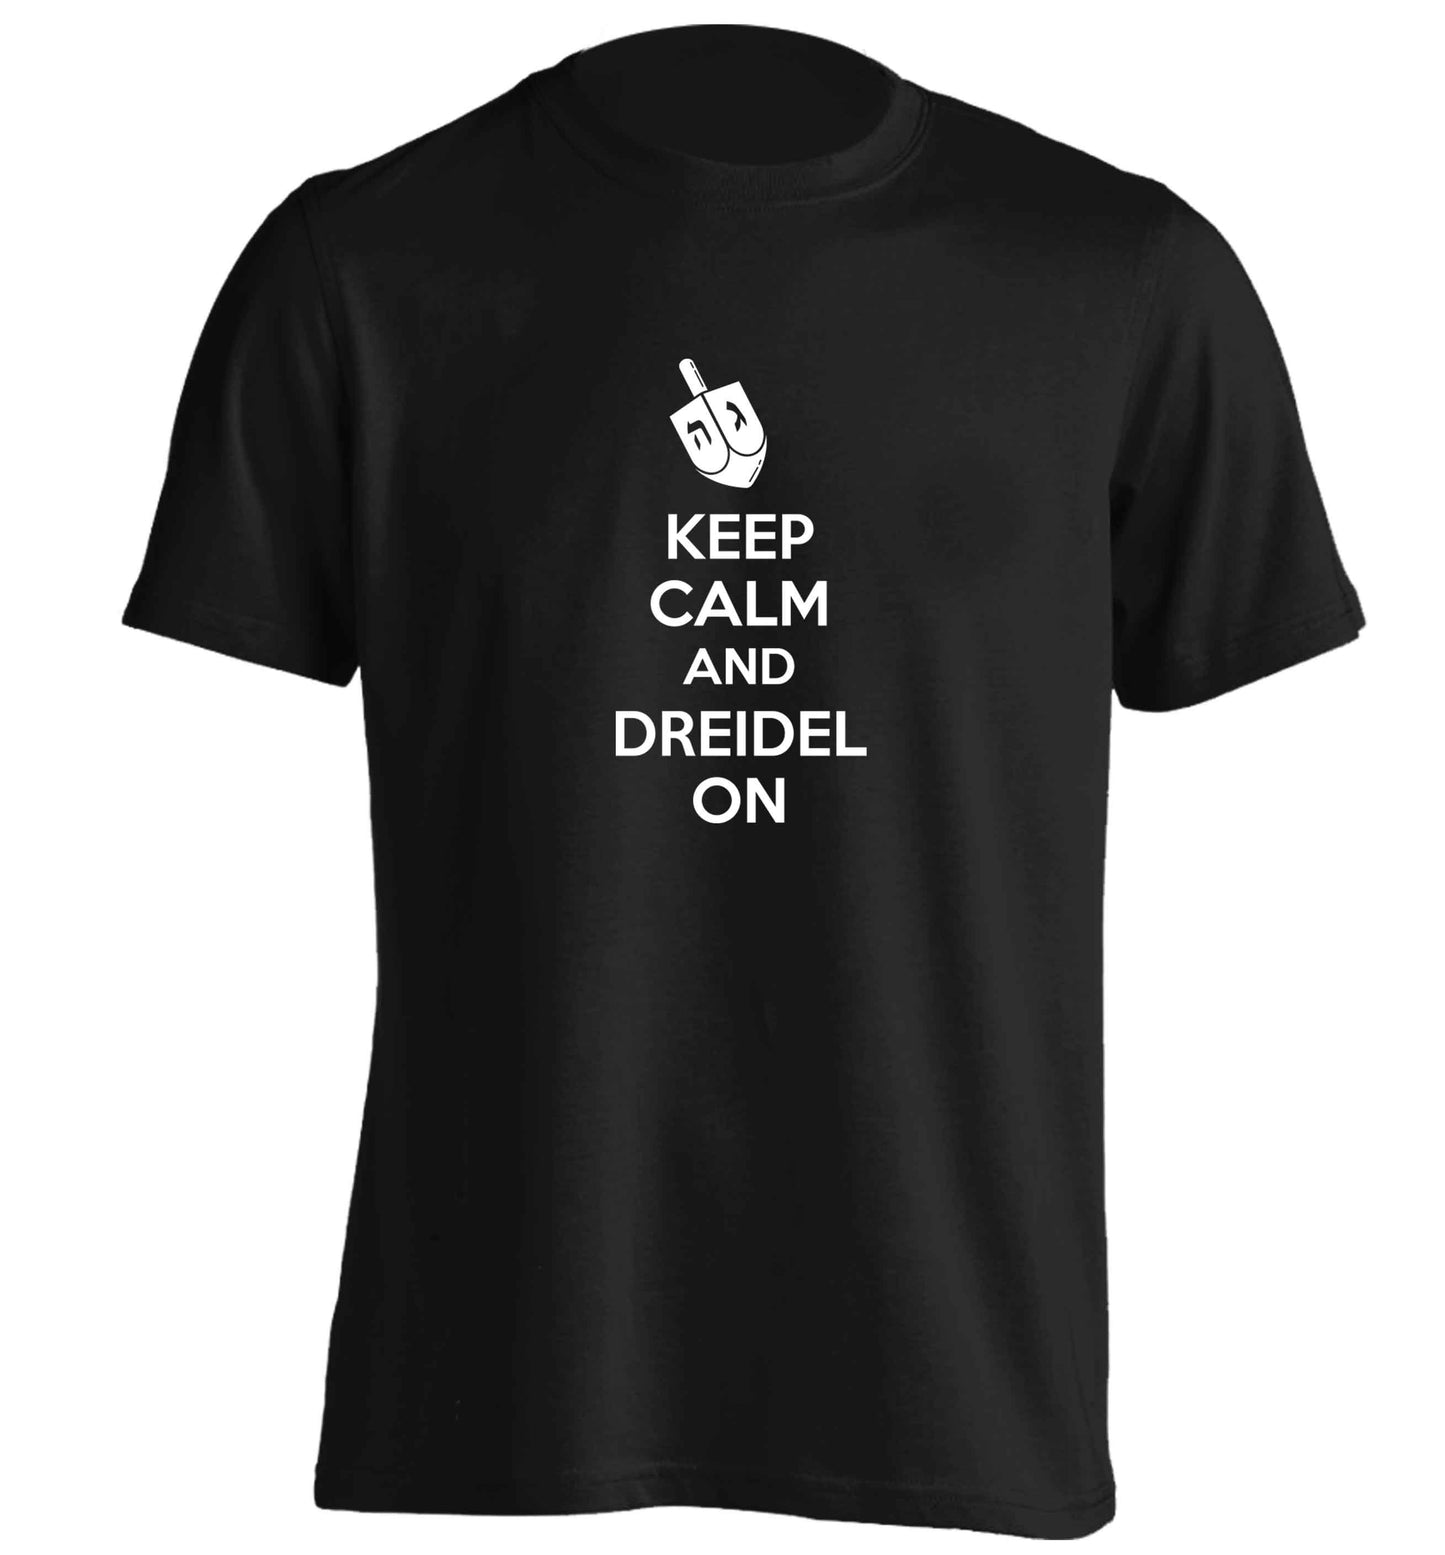 Keep calm and dreidel on adults unisex black Tshirt 2XL